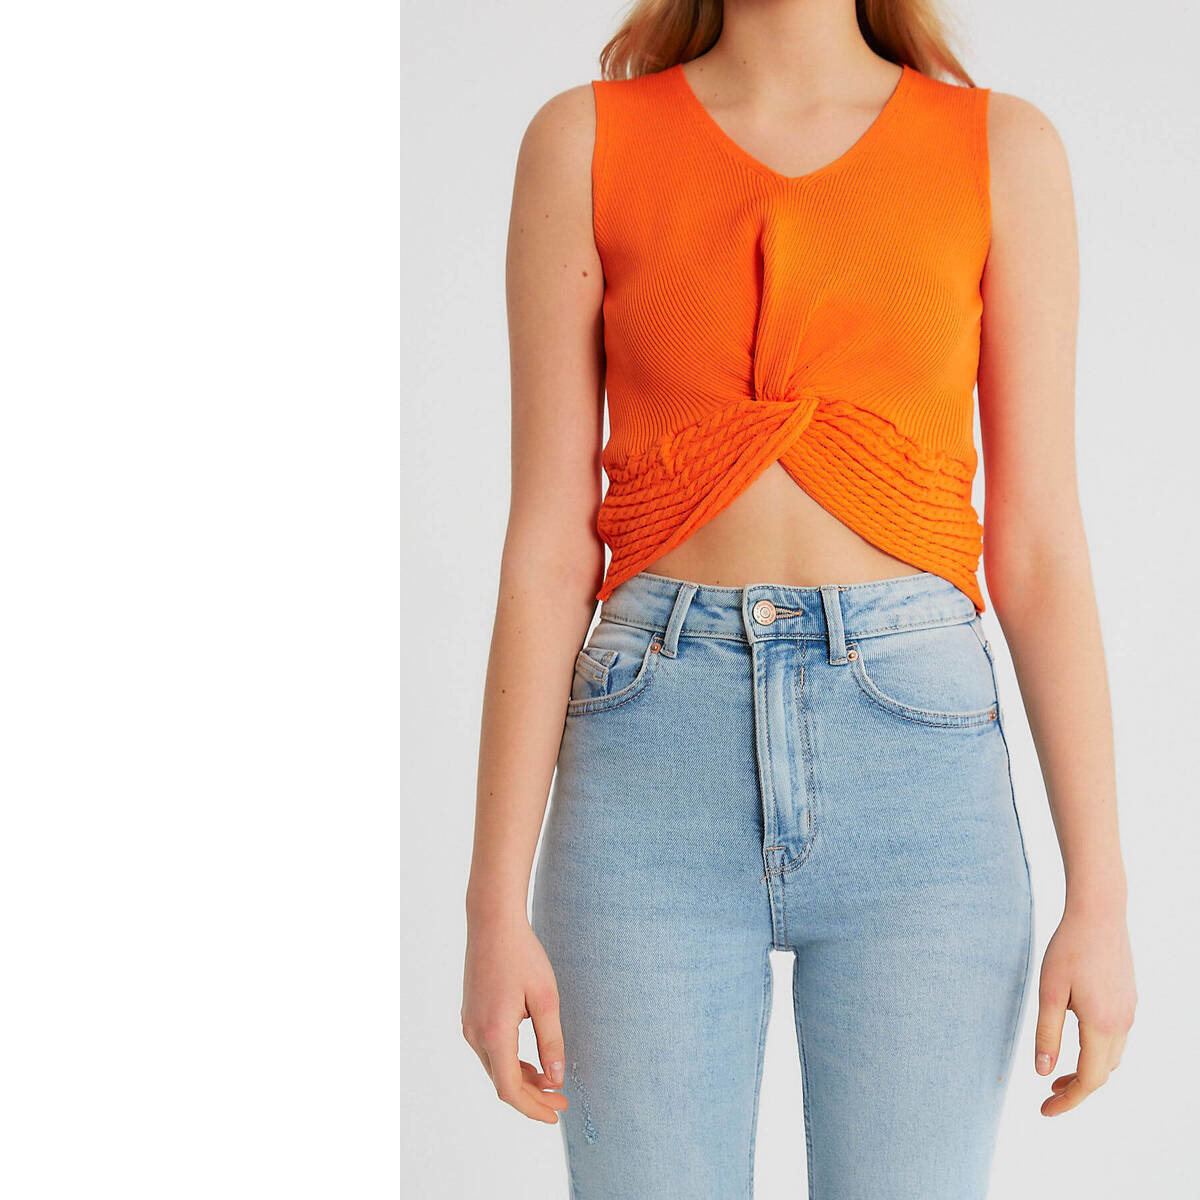 textil Mujer Tops / Blusas Robin-Collection Top Elástico Rib Mujer T Naranja Naranja